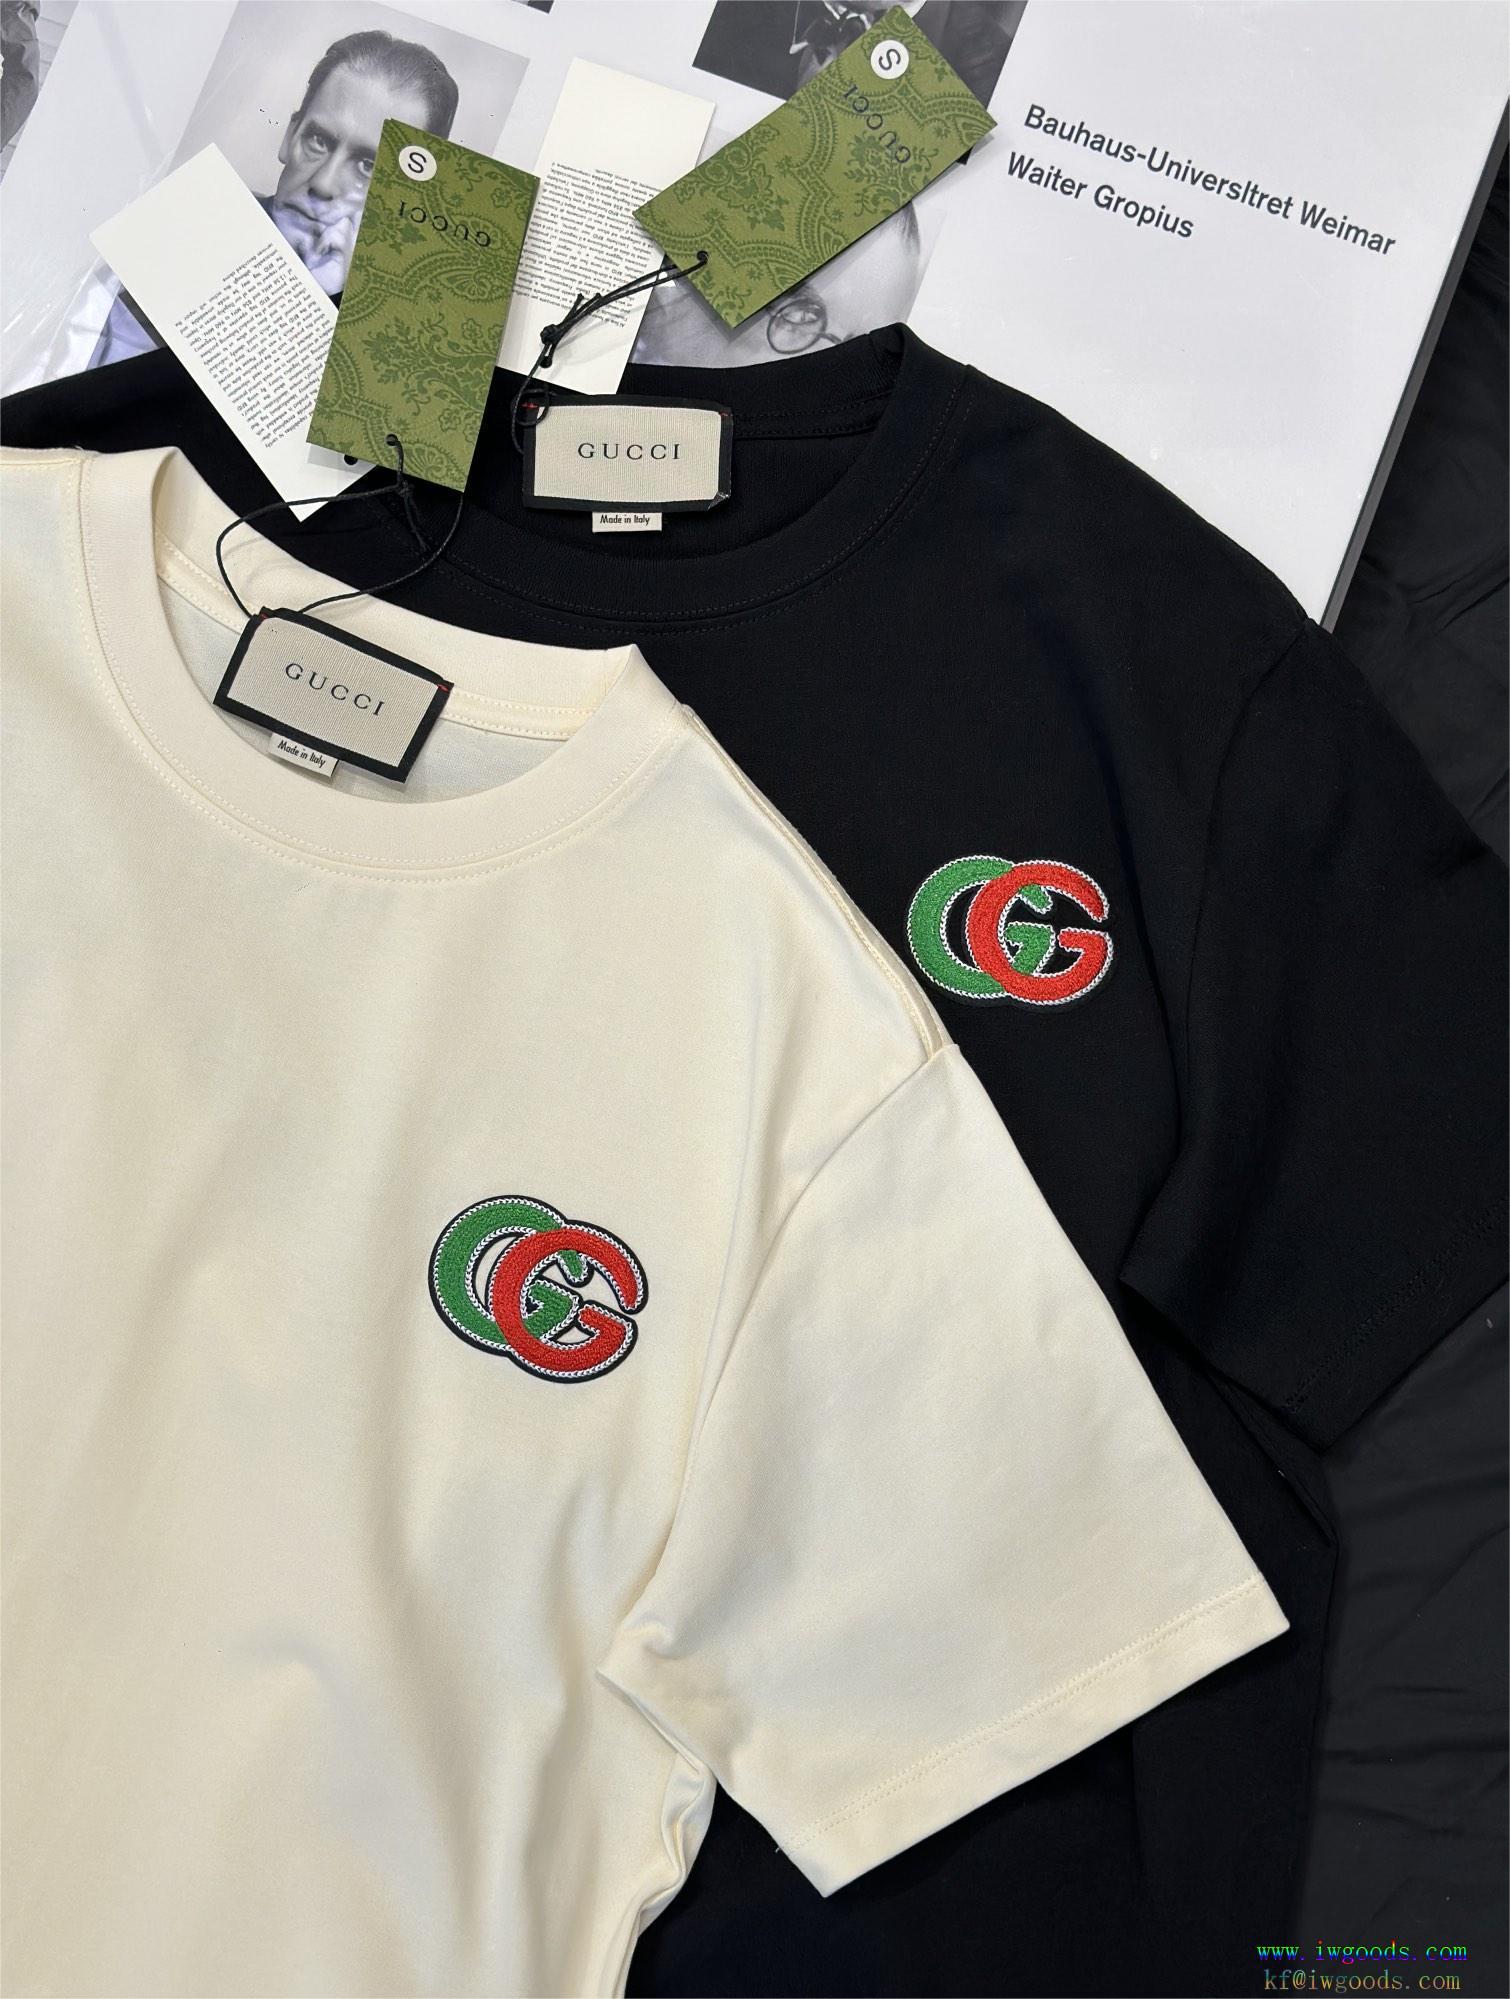 GUCC1半袖Tシャツ【ユニセックス】ブランド フェイク,GUCC1ブランド コピー ショップ